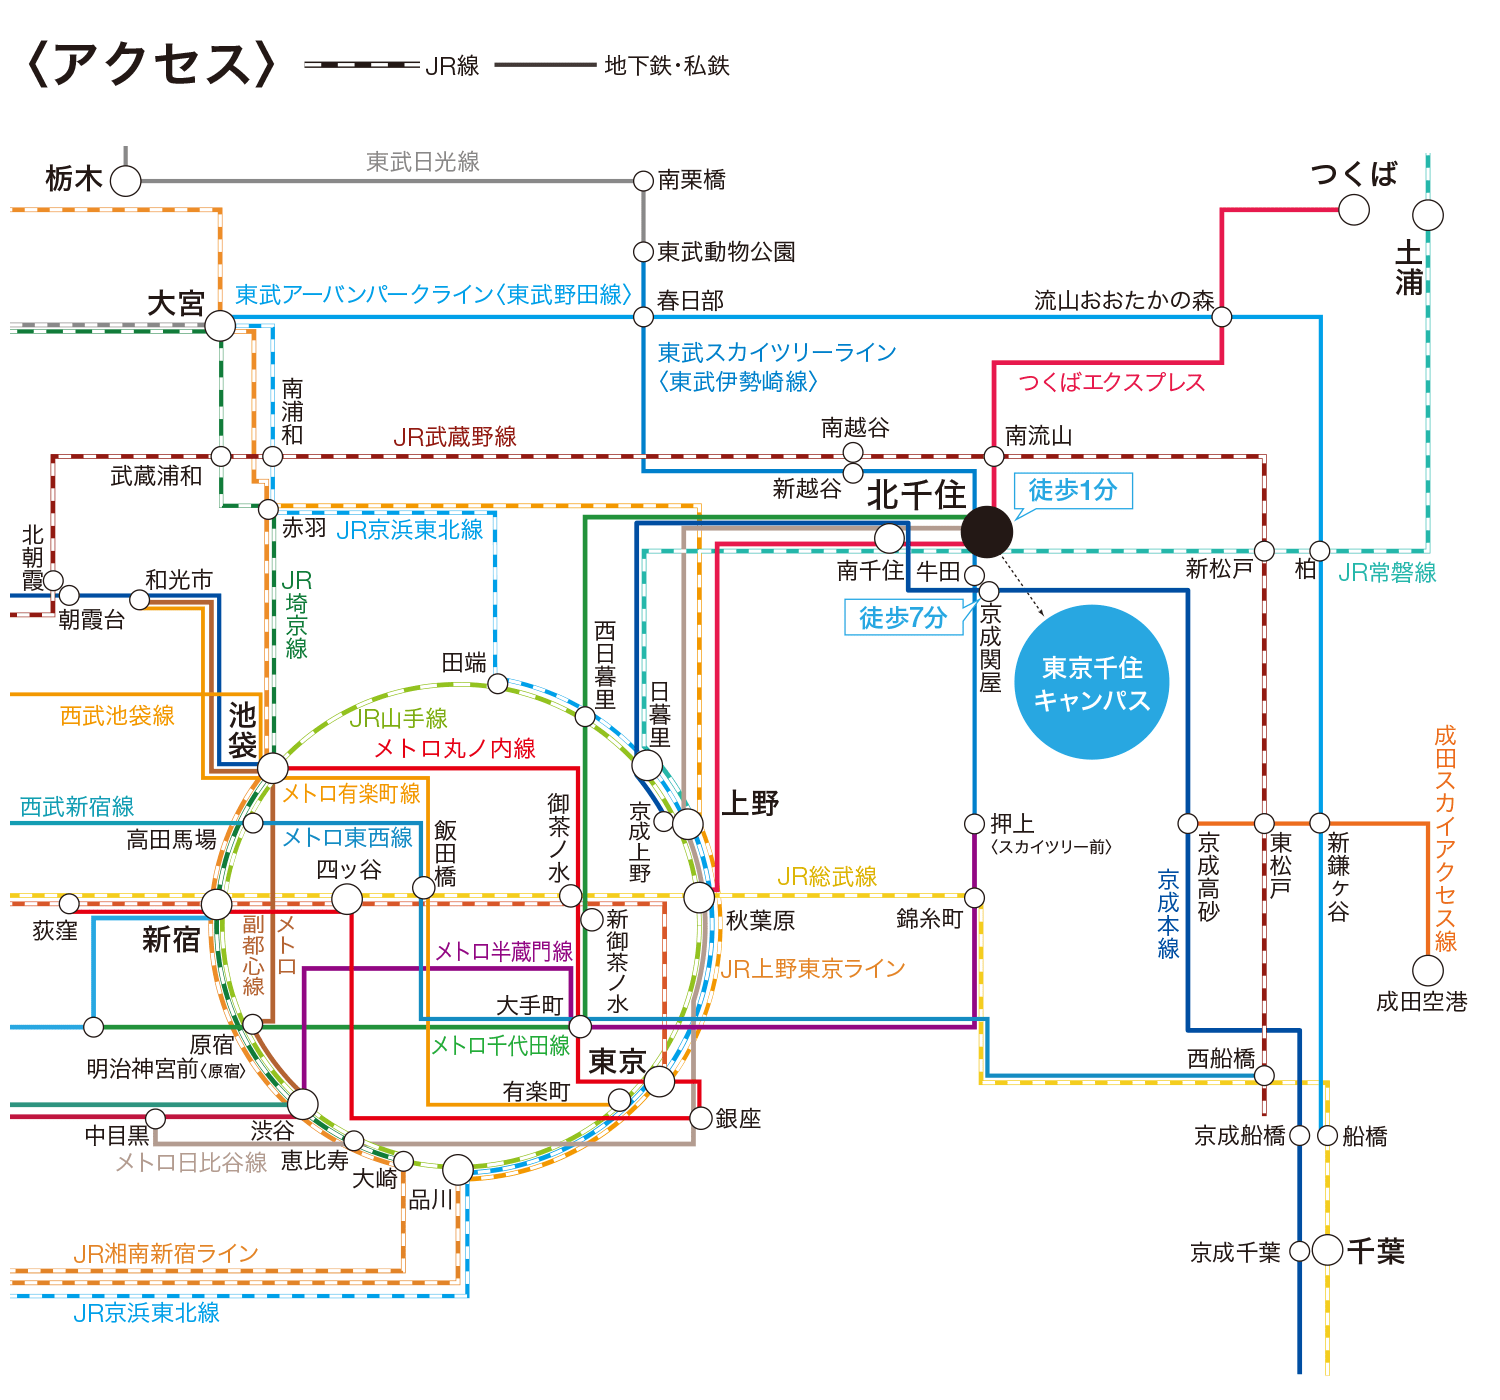 東京千住キャンパスへの電車でのアクセス